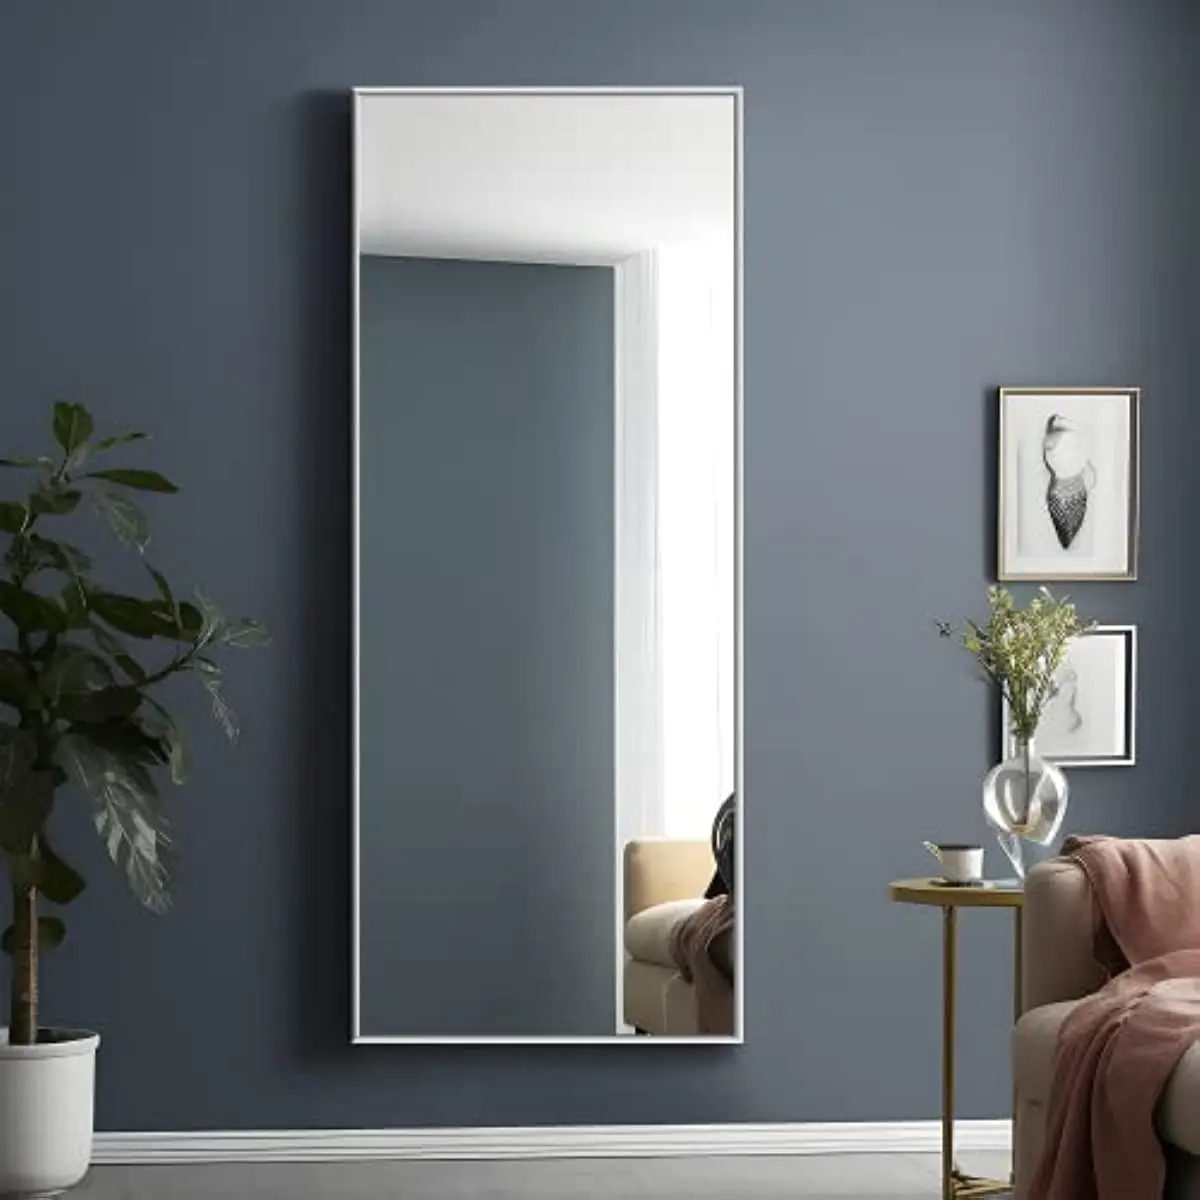 

Большое прямоугольное зеркальное напольное зеркало для спальни, туалетное зеркало, настенное зеркало, тонкая рамка из алюминиевого сплава, серебристое, 65x22 дюйма